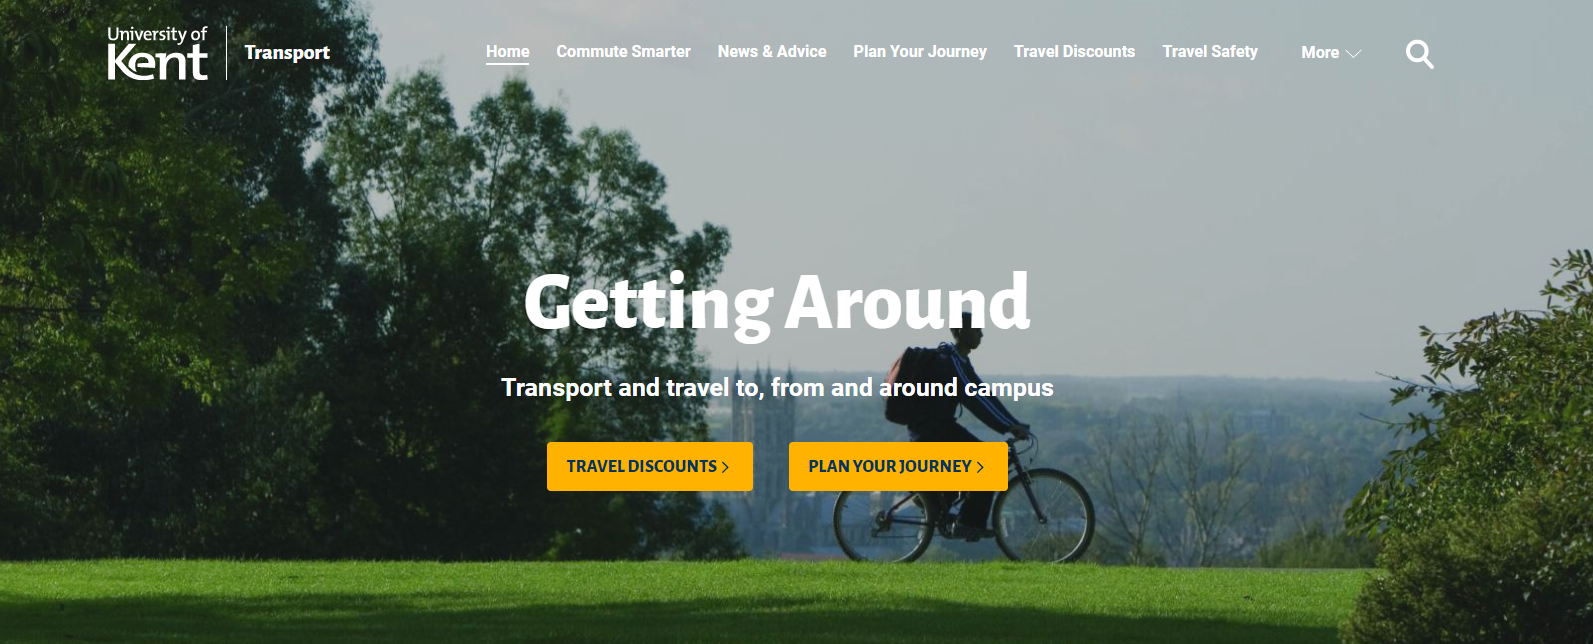 新的交通和旅游网页图像